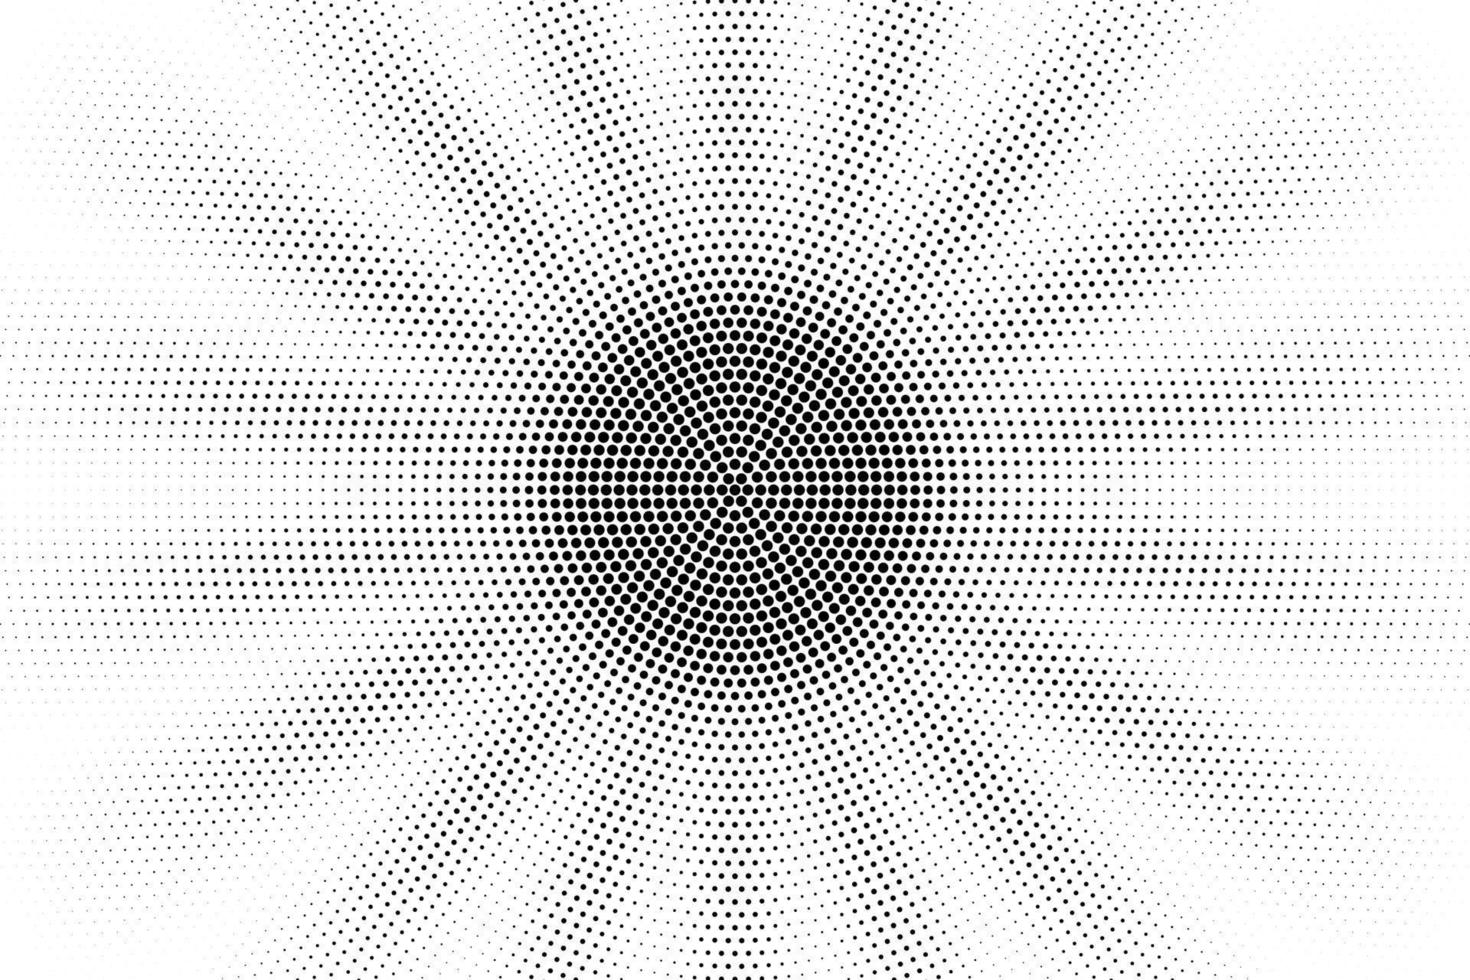 dégradé radial de demi-teinte semblable au soleil composé de cercles, motif de points vectoriels. vecteur